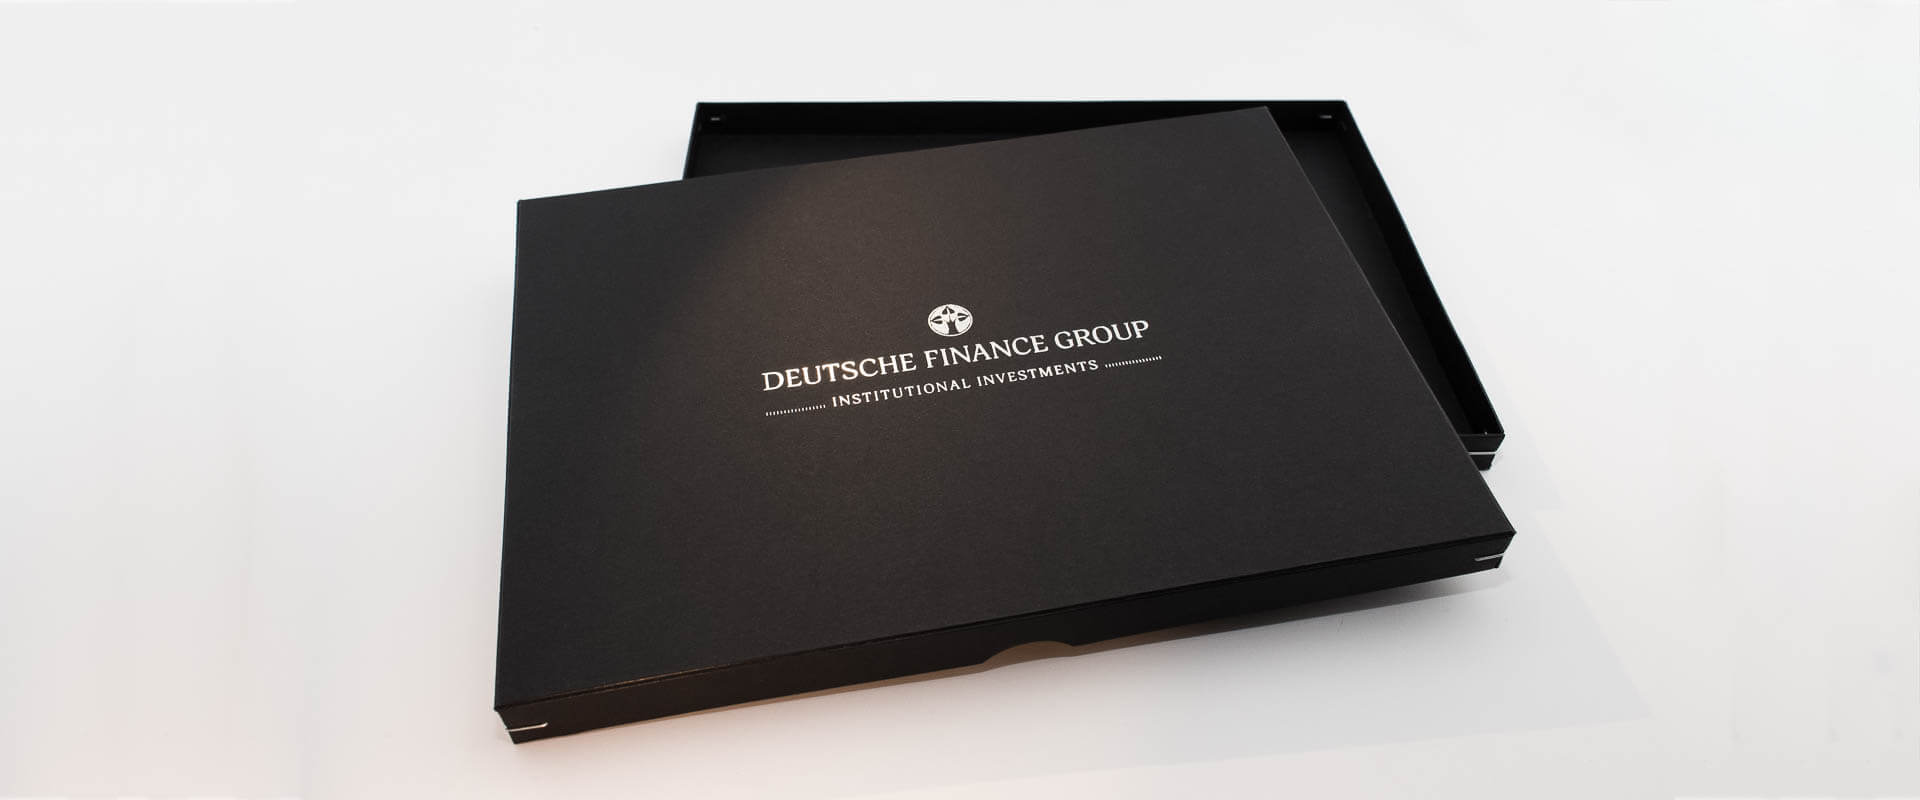 Eine Ritz-Box für die Deutsche Finance Group